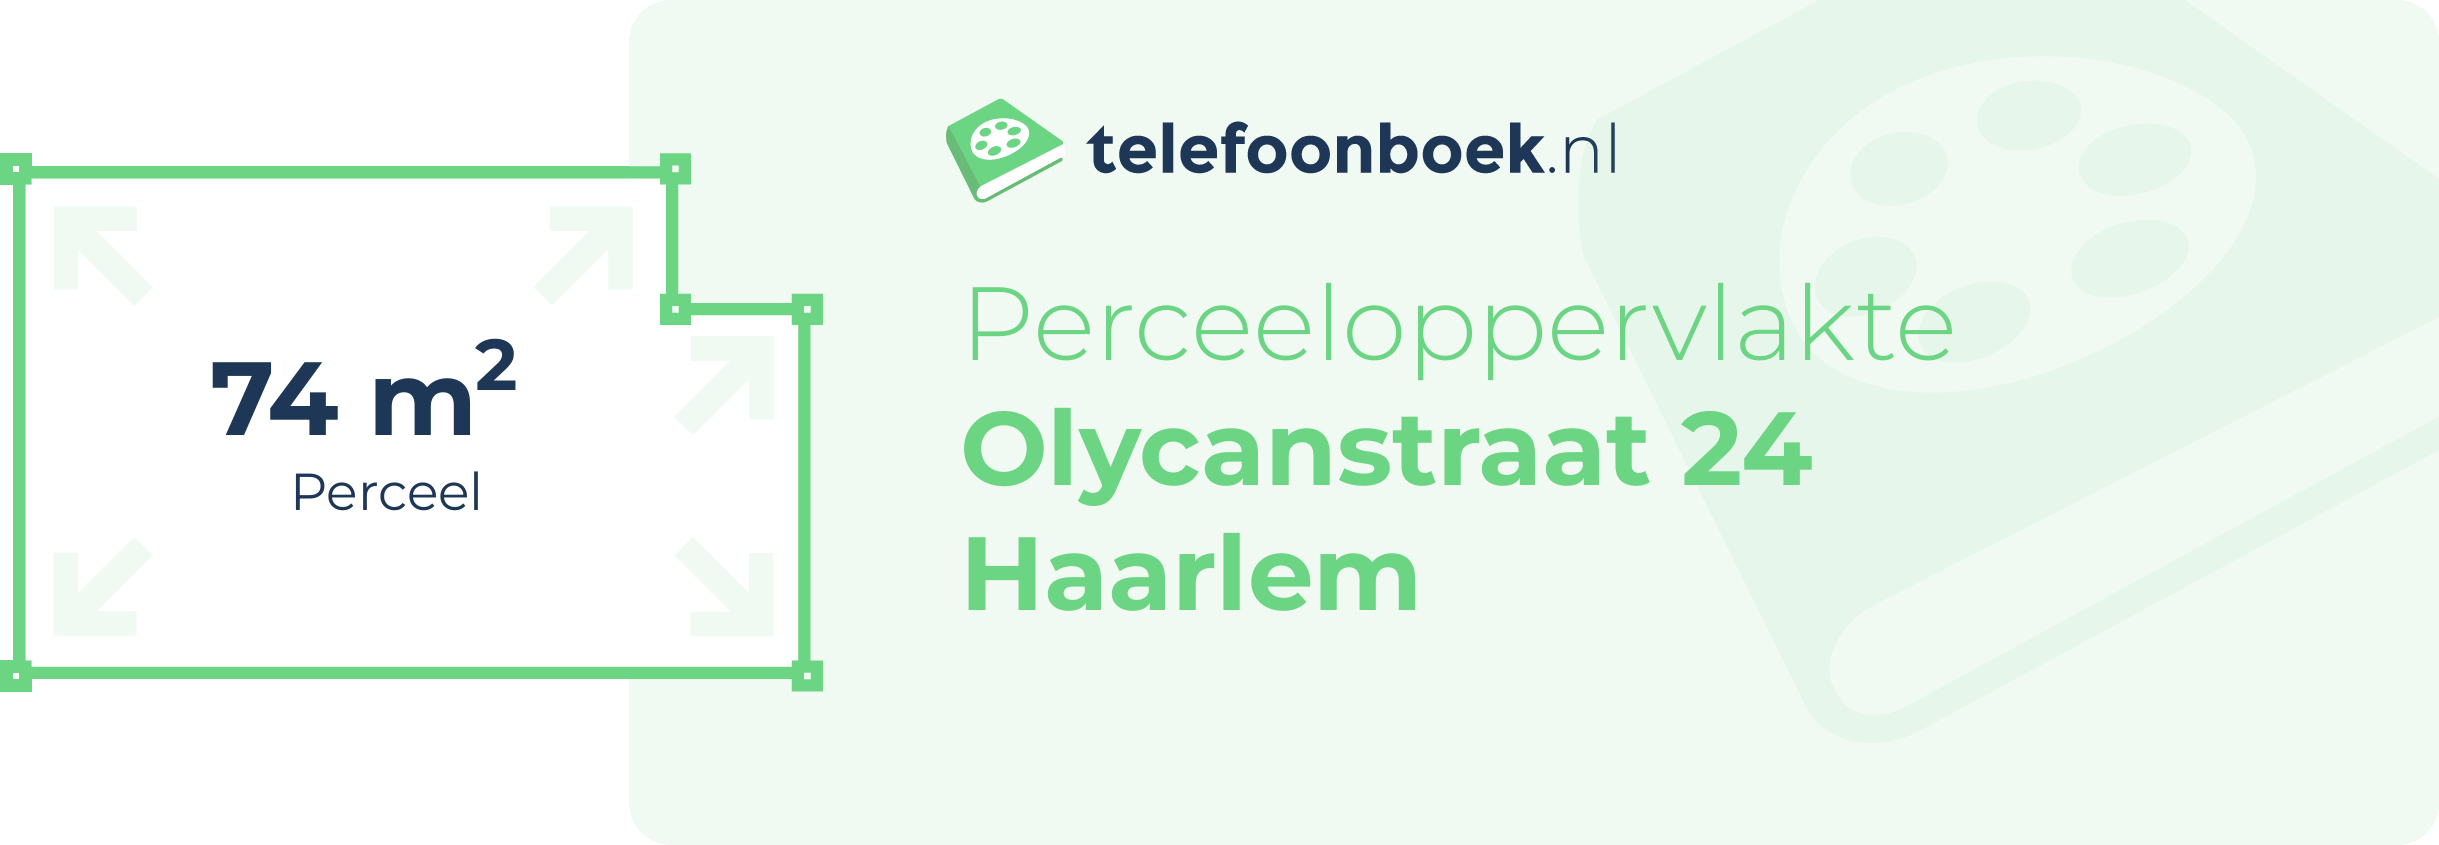 Perceeloppervlakte Olycanstraat 24 Haarlem